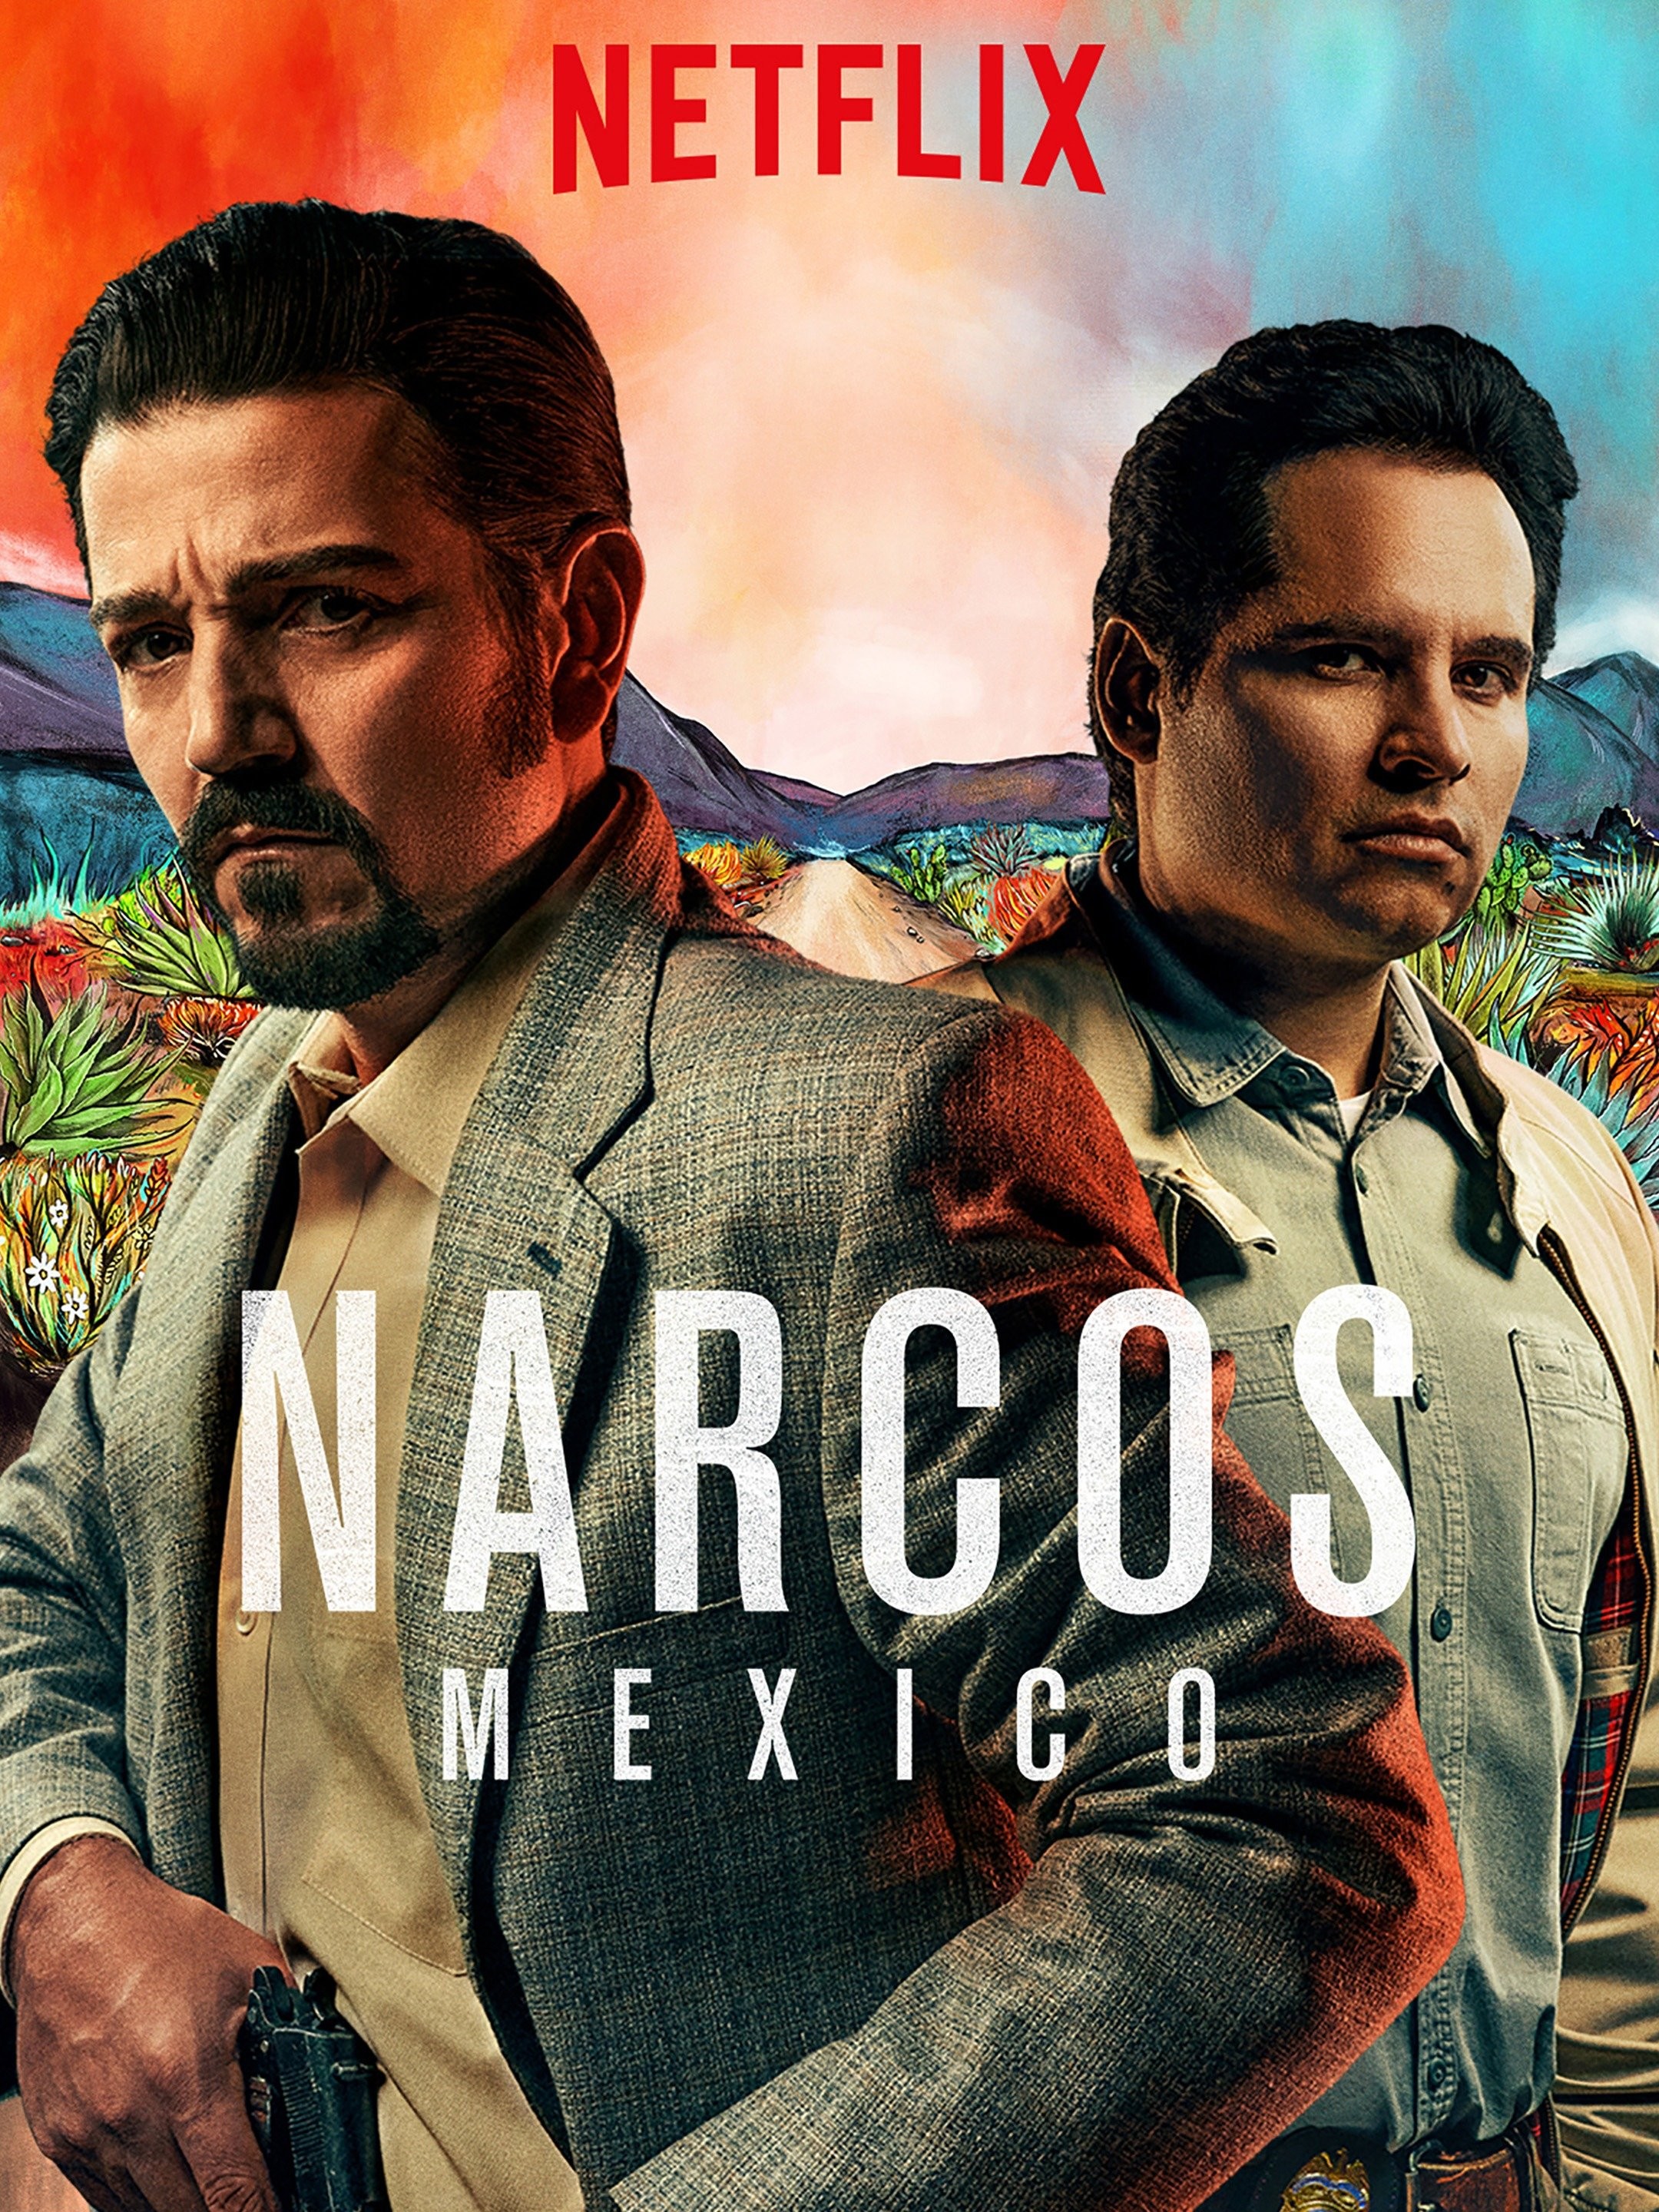 Narcos: Mexico' Season 2 Episode 4 Recap: Tunnel Vision